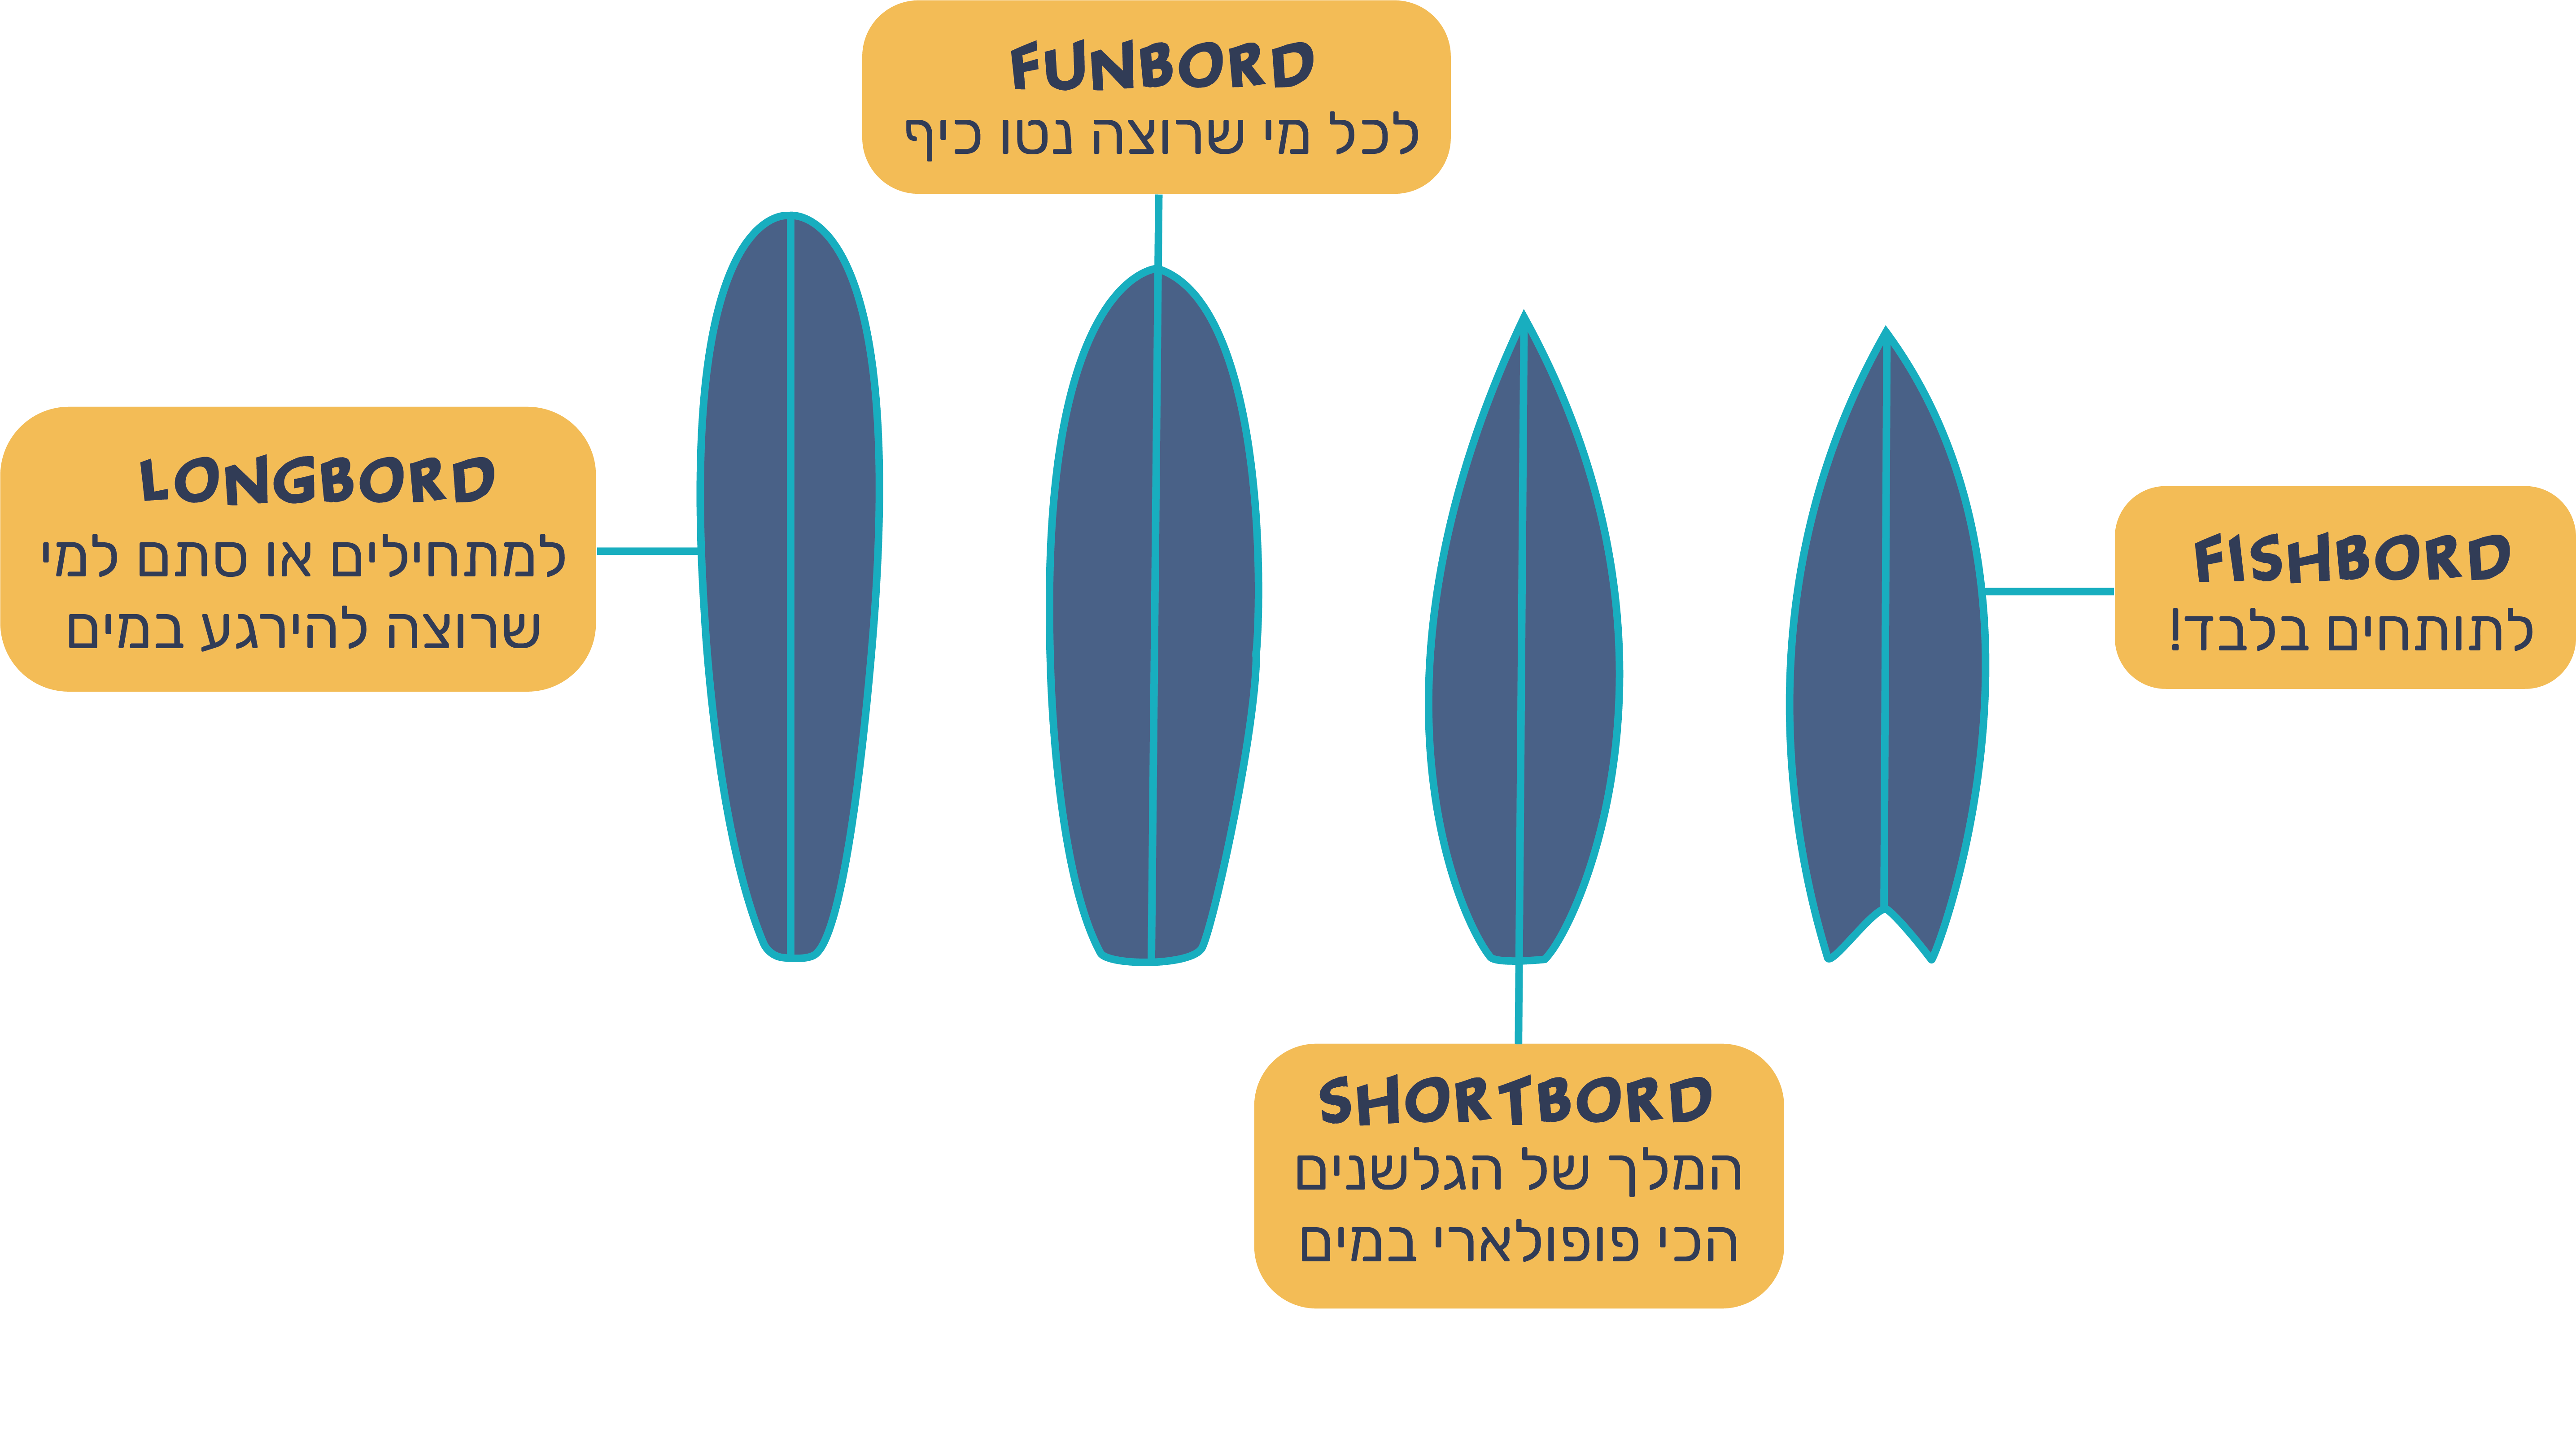 תמונה שמציגה ארבעה סוגי גלשנים עיקריים: long borad, fun borad, short board, fish-borad